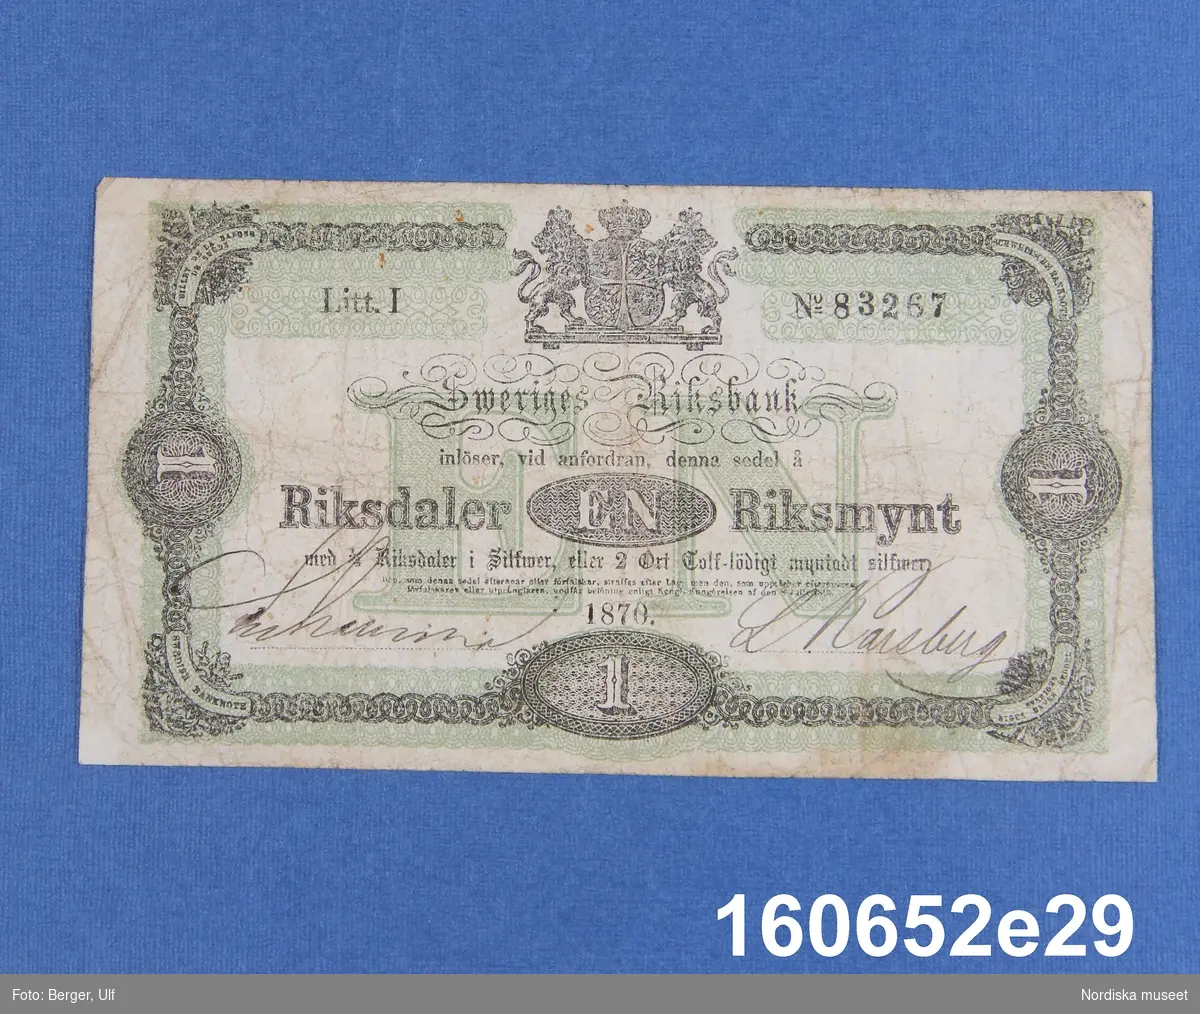 Sveriges Riksbank, 1 riksdaler riksmynt. Daterad 1870, litt I nr 83267.